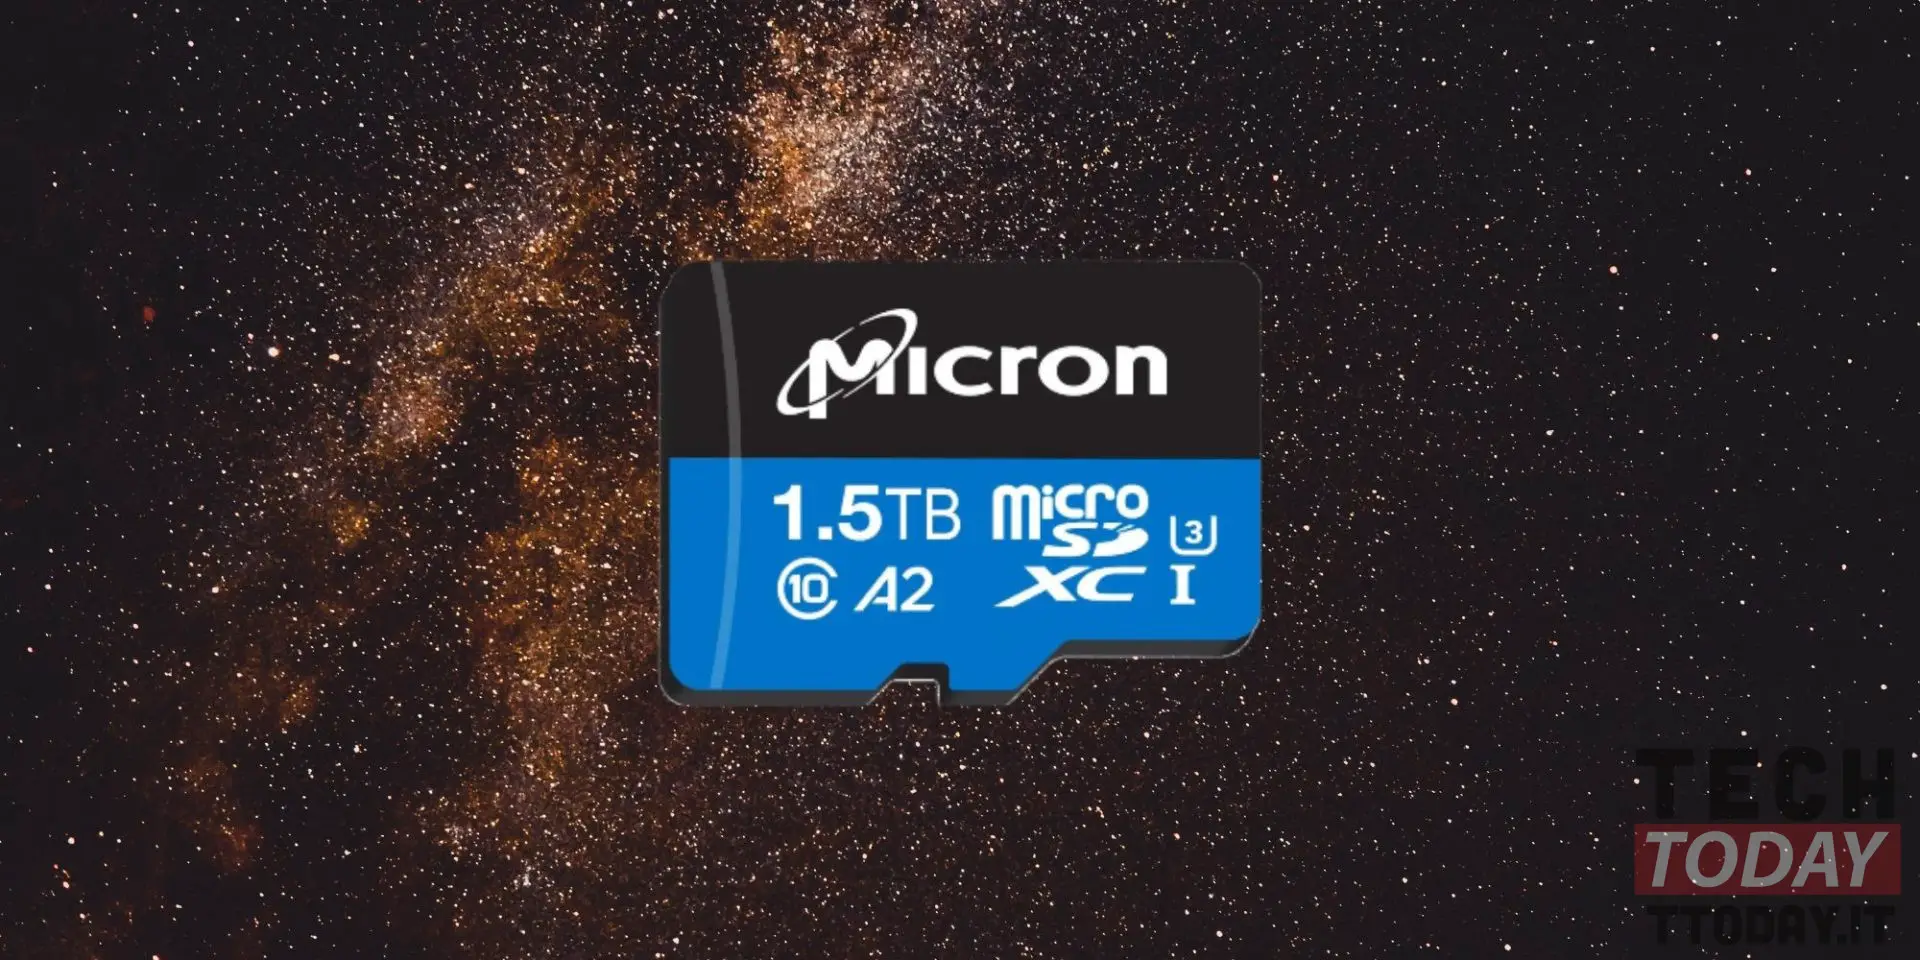 mikron mikrosd 1.5 tb